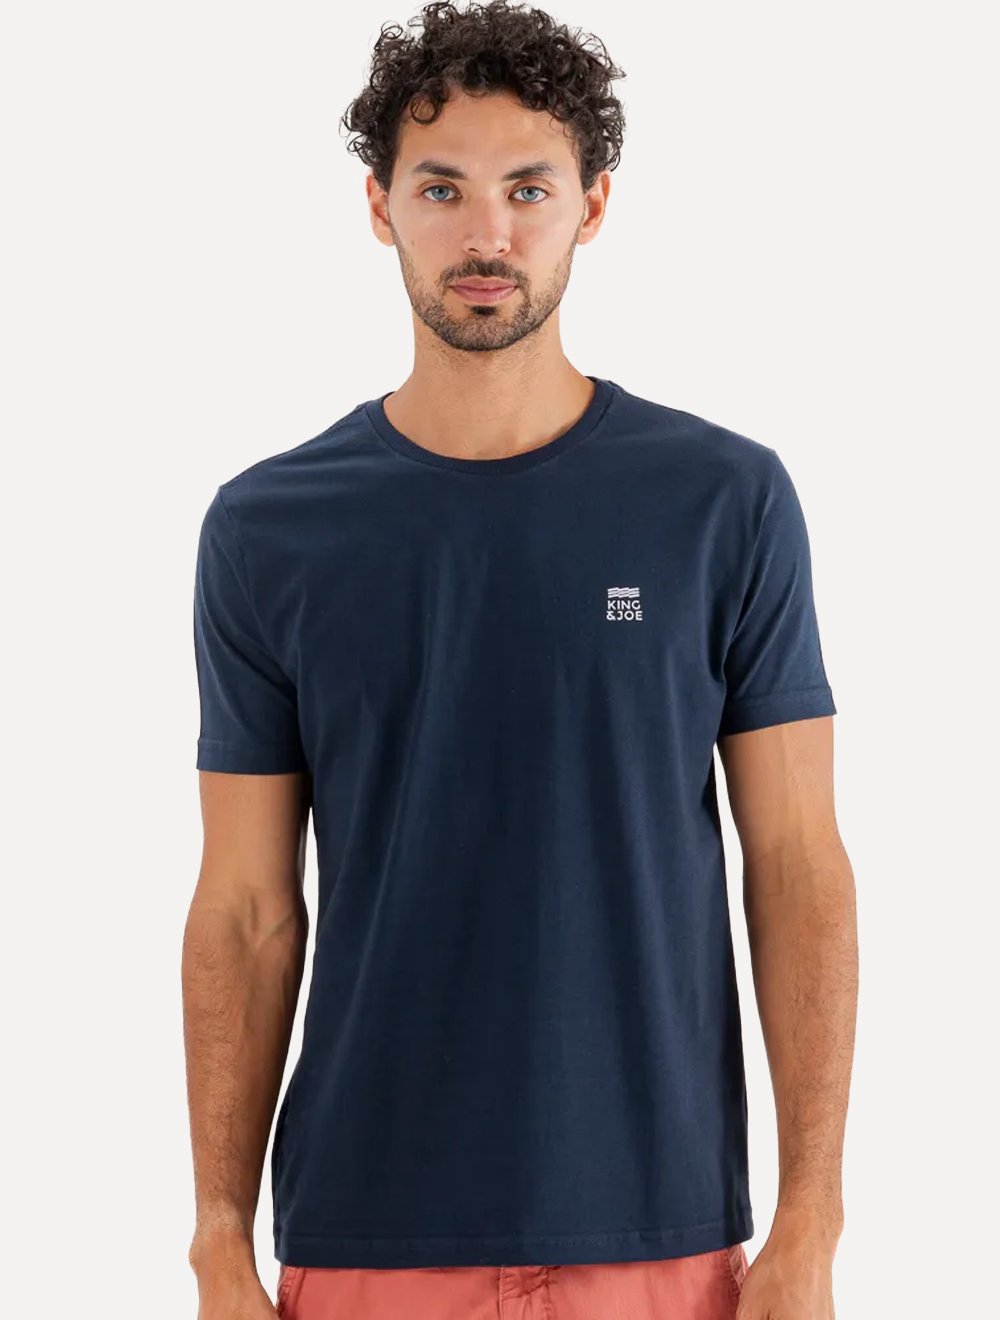 Camiseta King & Joe Masculina Slim Basic Light Logo Azul Marinho